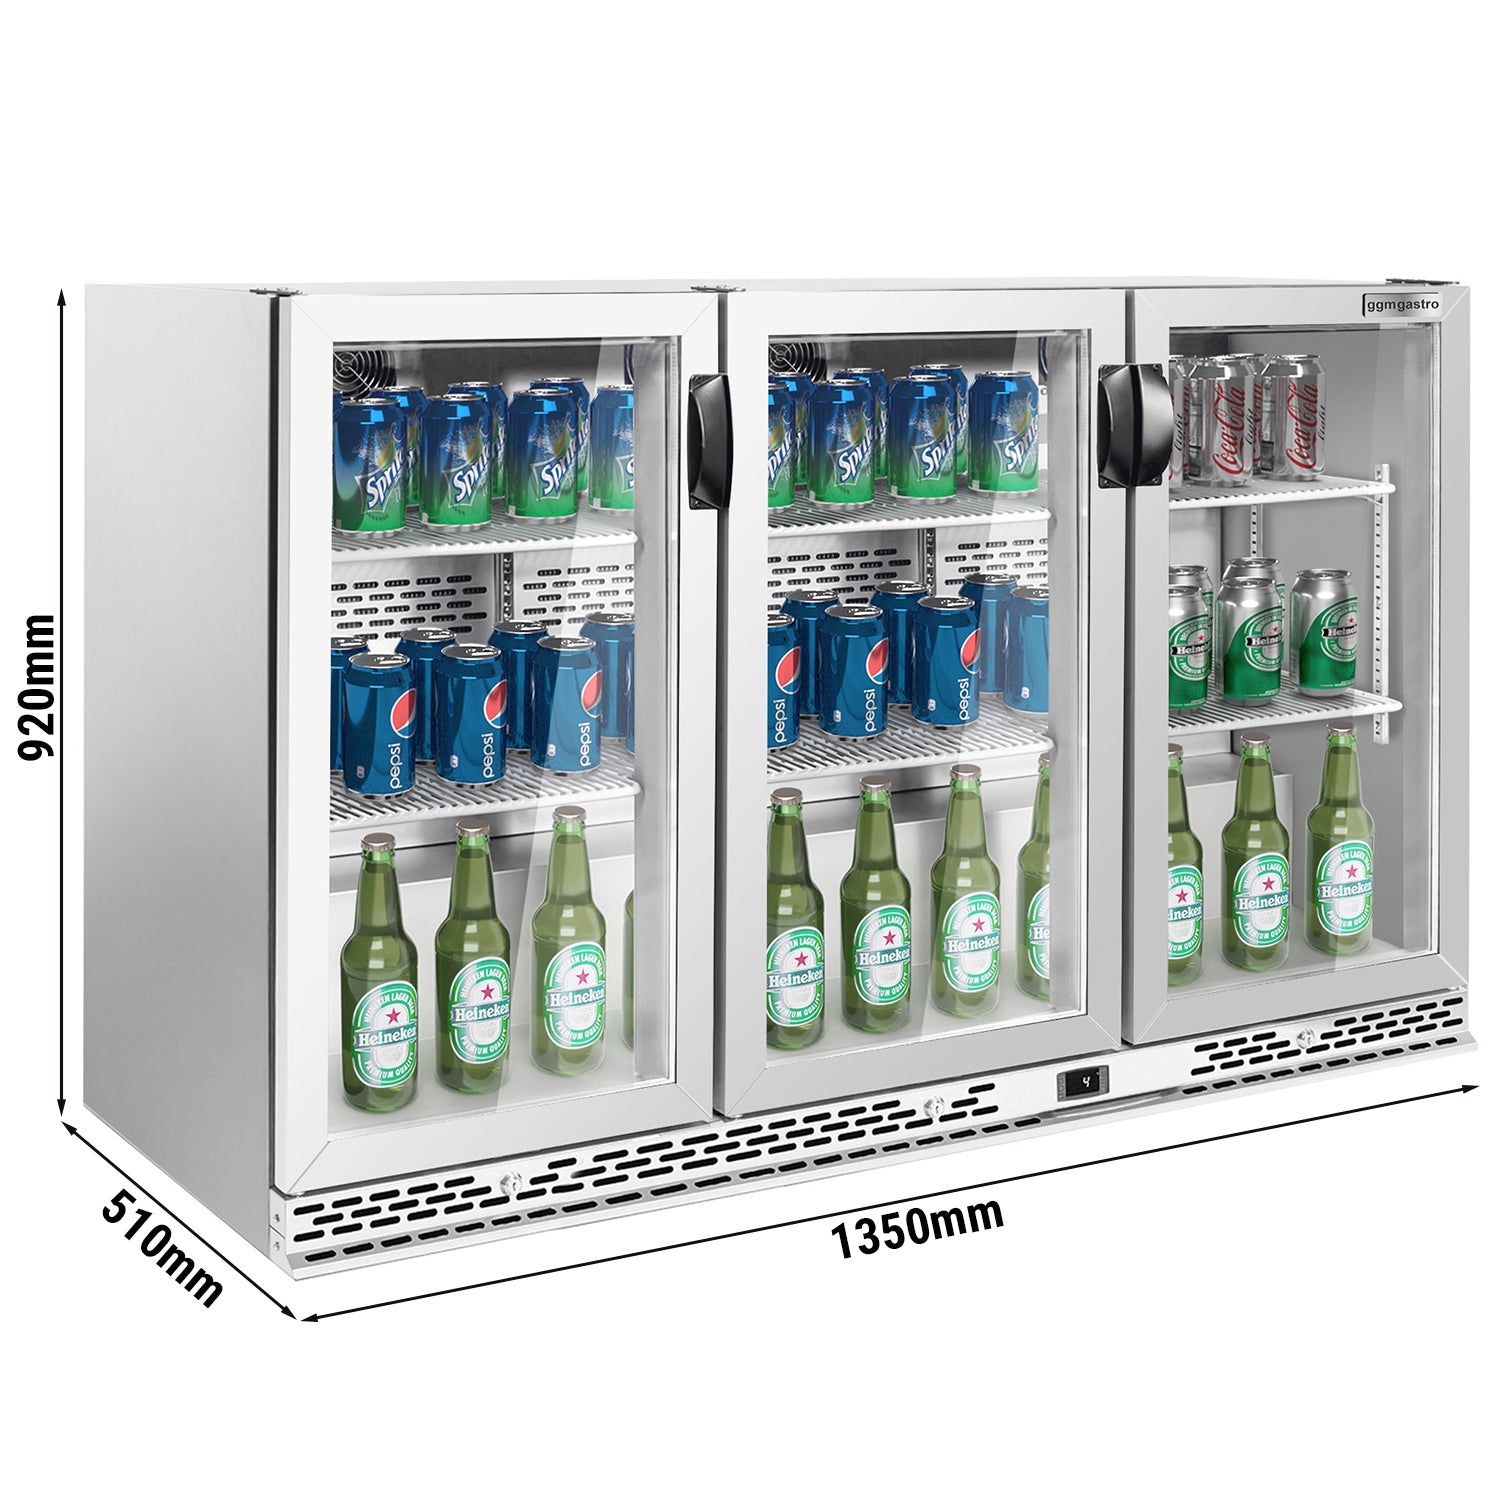 Барова хладилна маса за напитки 330 литра - с 3 стъклени врати (неръждаема стомана)